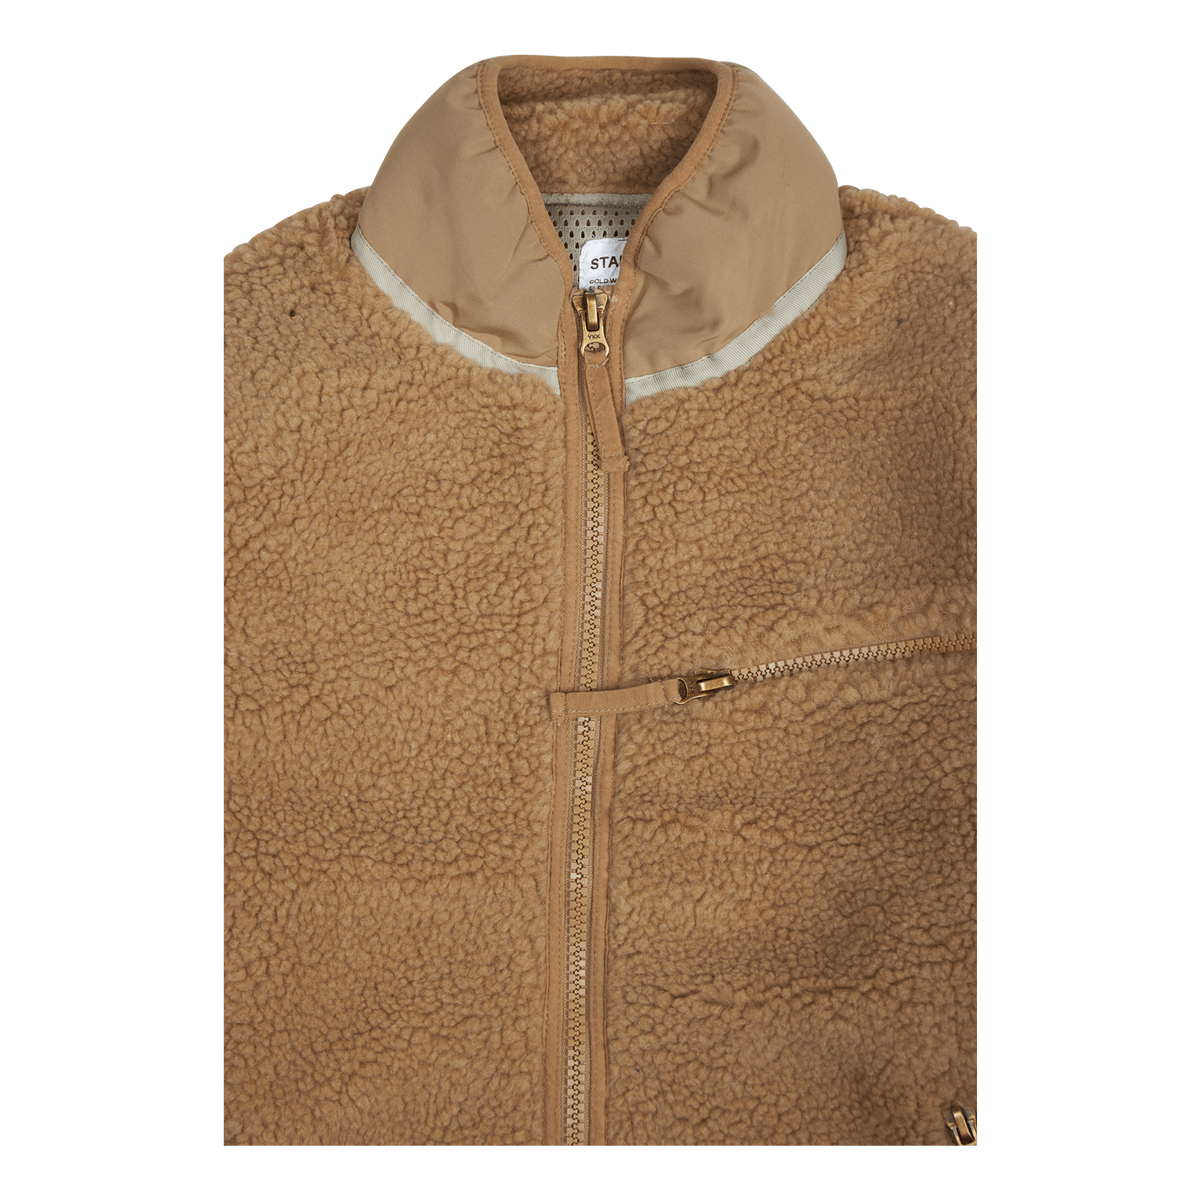 High Pile Fleece Jacket Khaki, Stan Ray